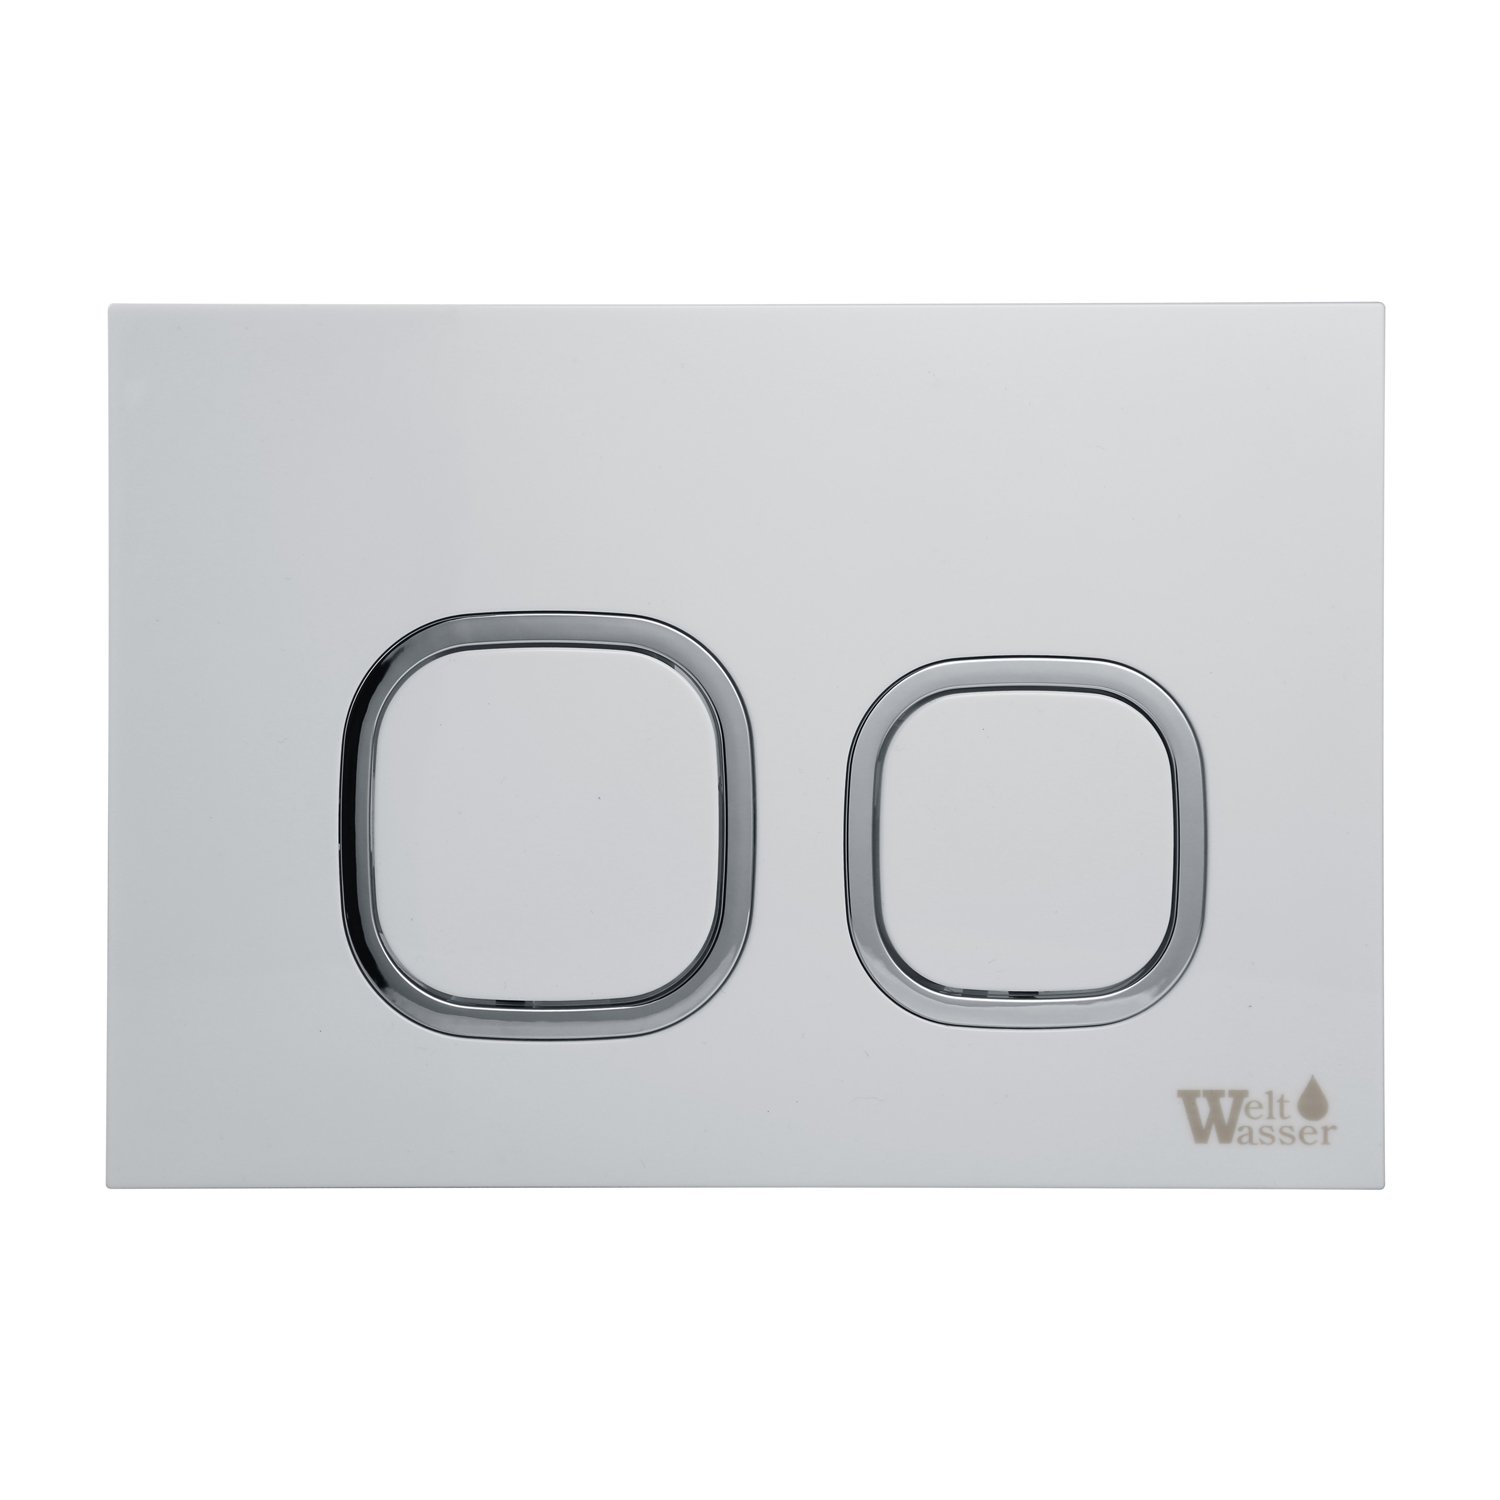 Комплект Weltwasser 10000011300 унитаза Merzbach 043 GL-WT с сиденьем микролифт и инсталляции Amberg 506 ST с белой кнопкой Amberg RD-WT - фото 1